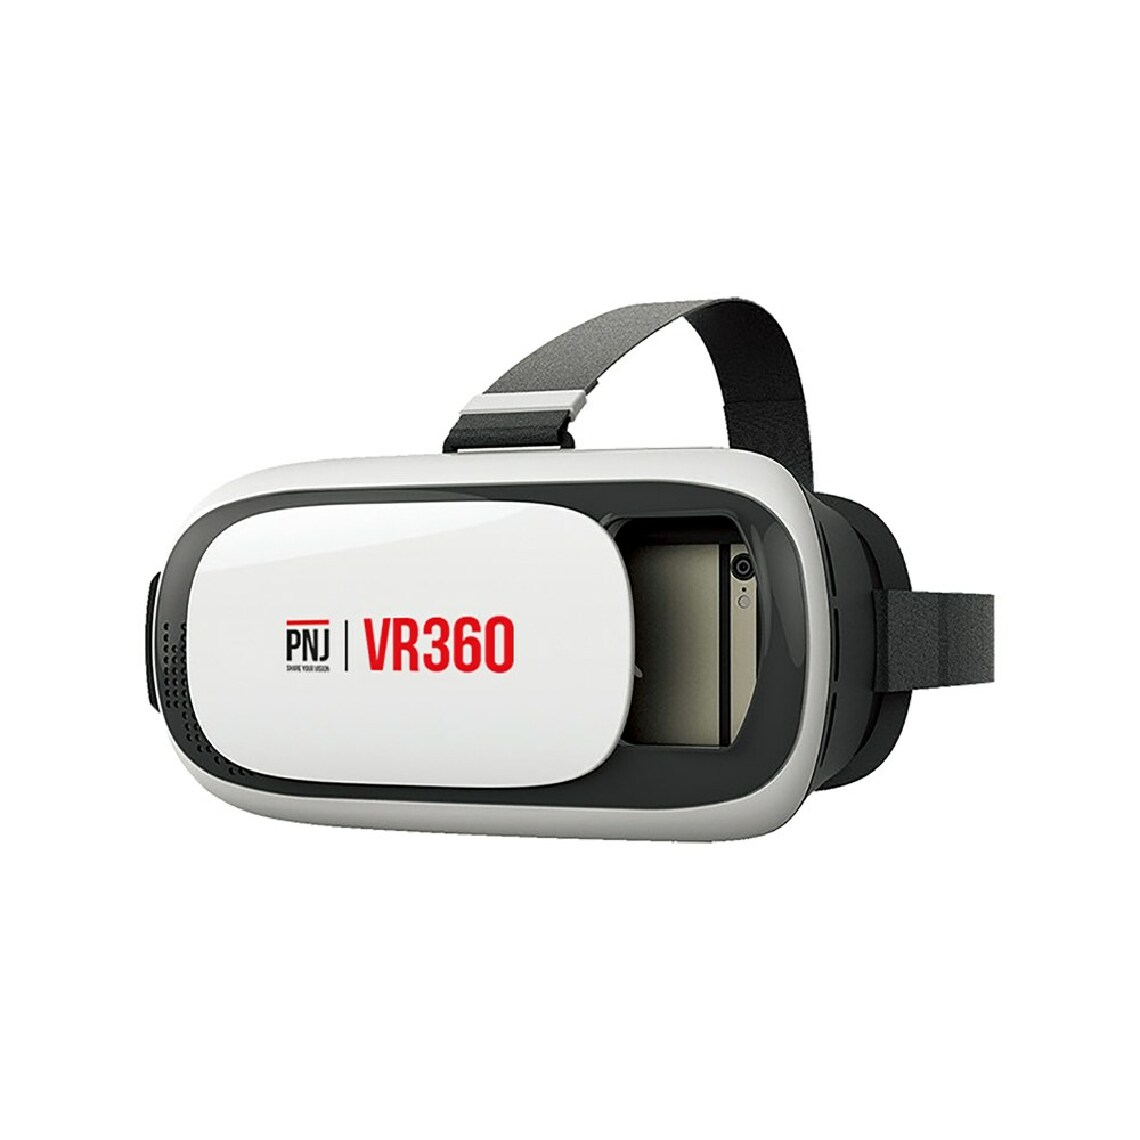 Pnj Drone - Casque VR360 PNJ - Casques de réalité virtuelle